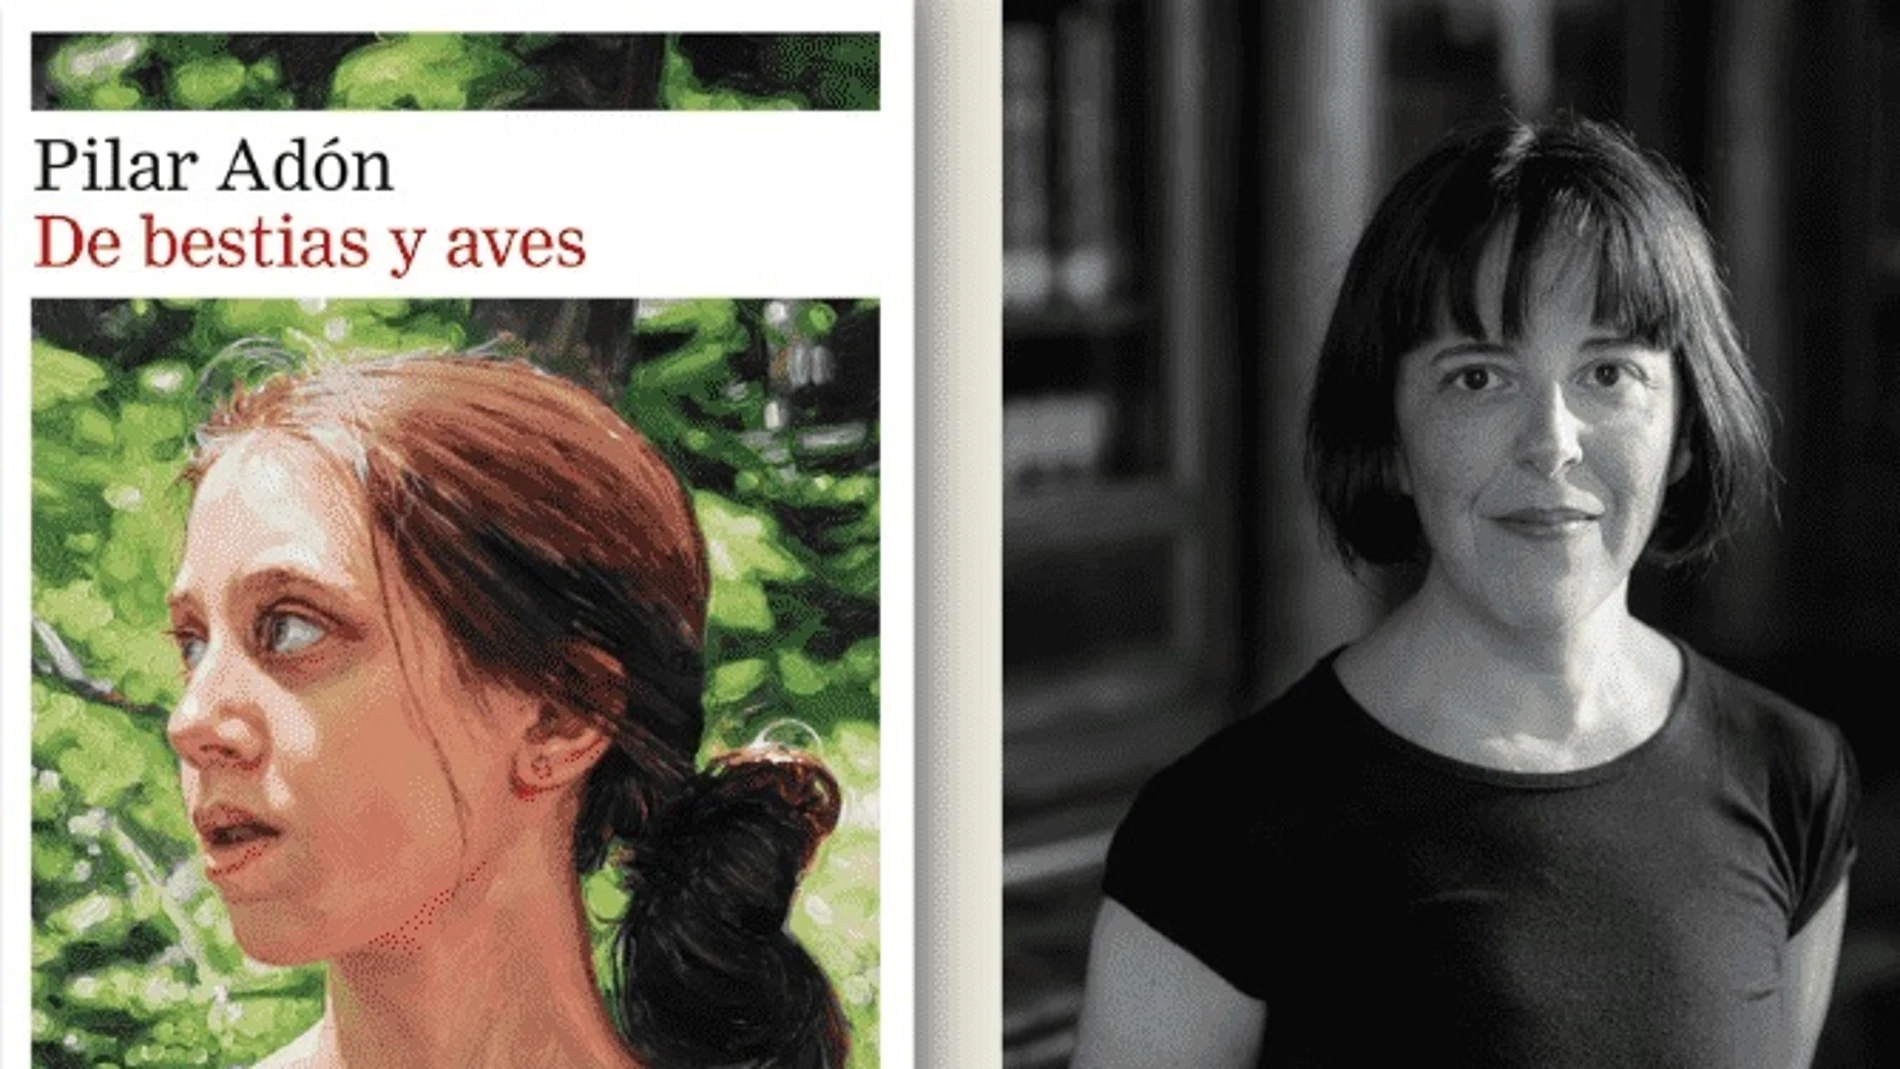 La escritora madrileña Pilar Adón gana el Premio Francisco Umbral por "De bestias y aves"